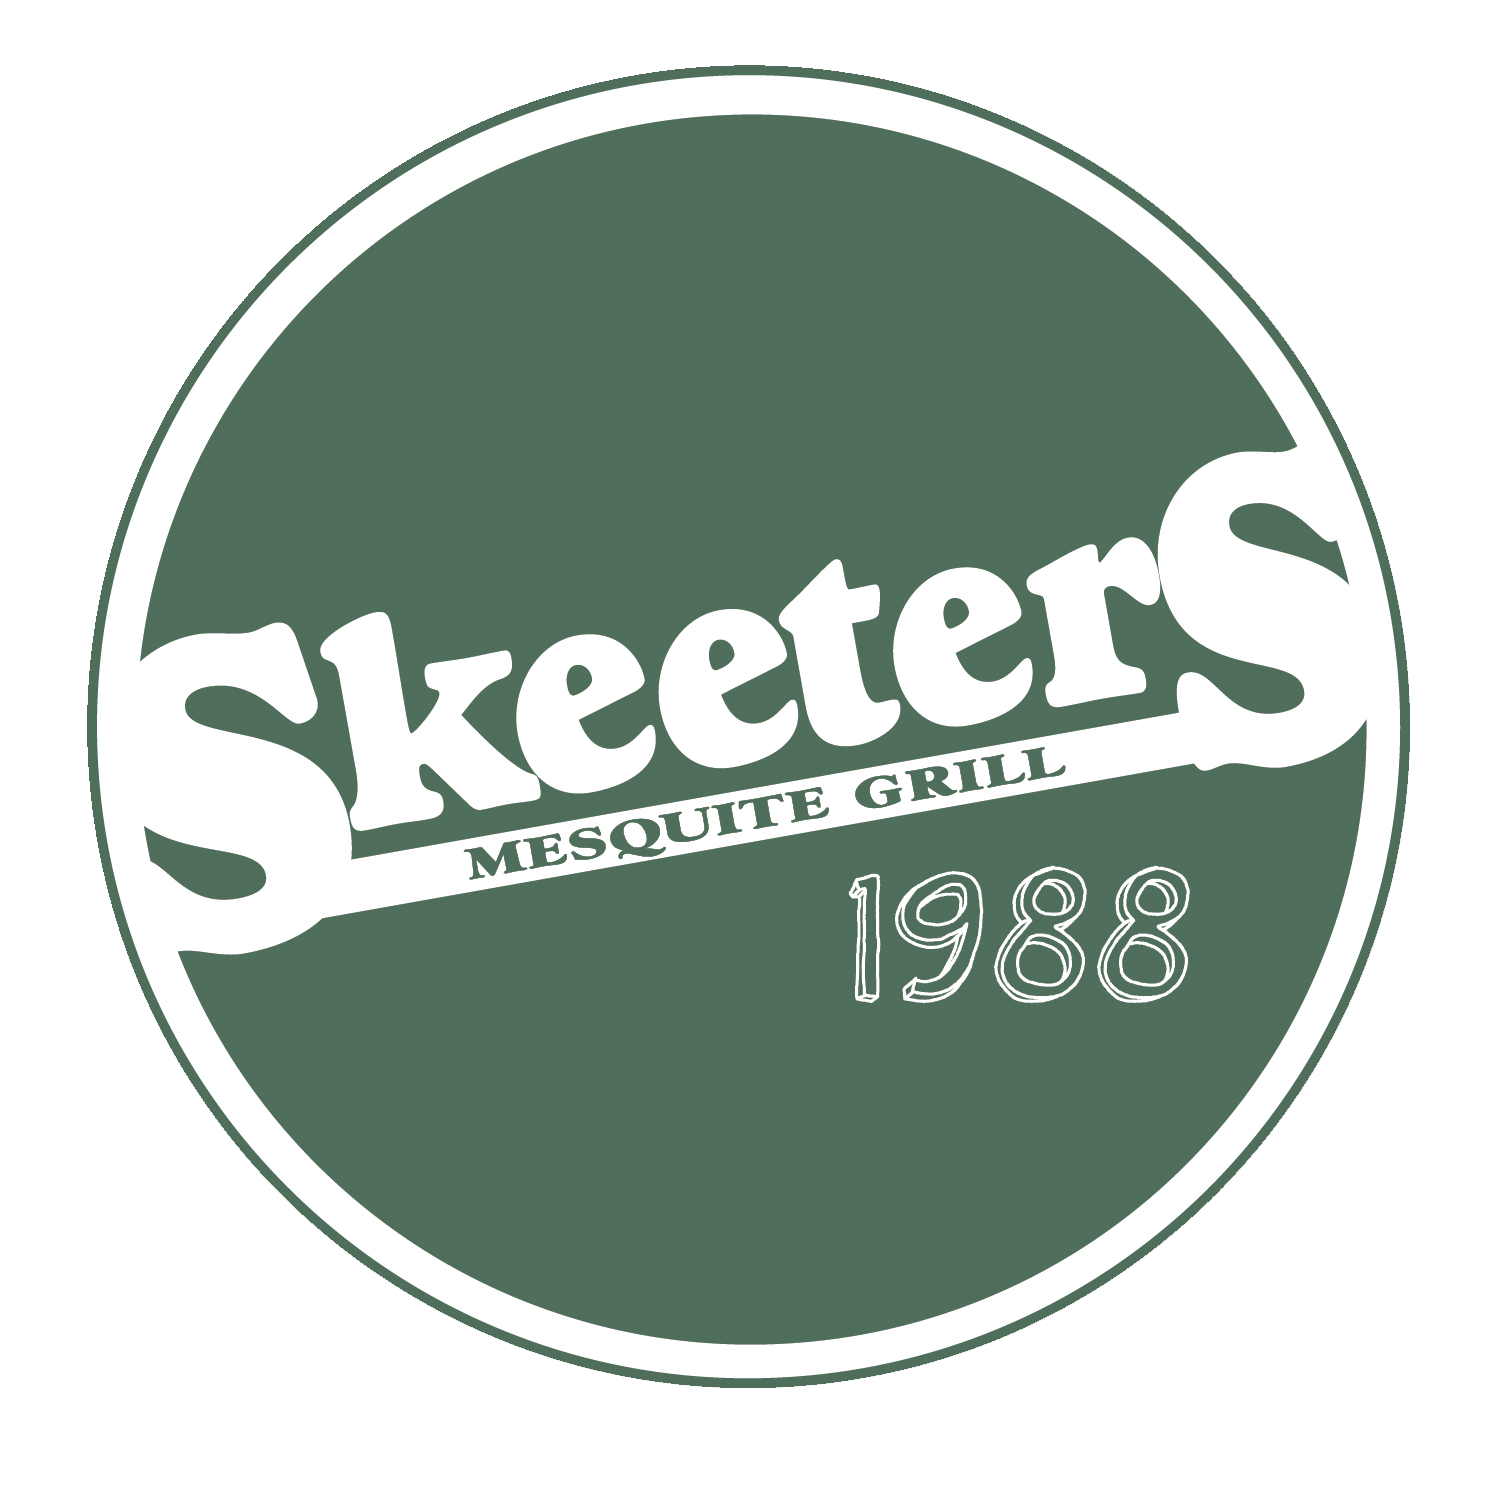 Skeeter's Mesquite Grill 